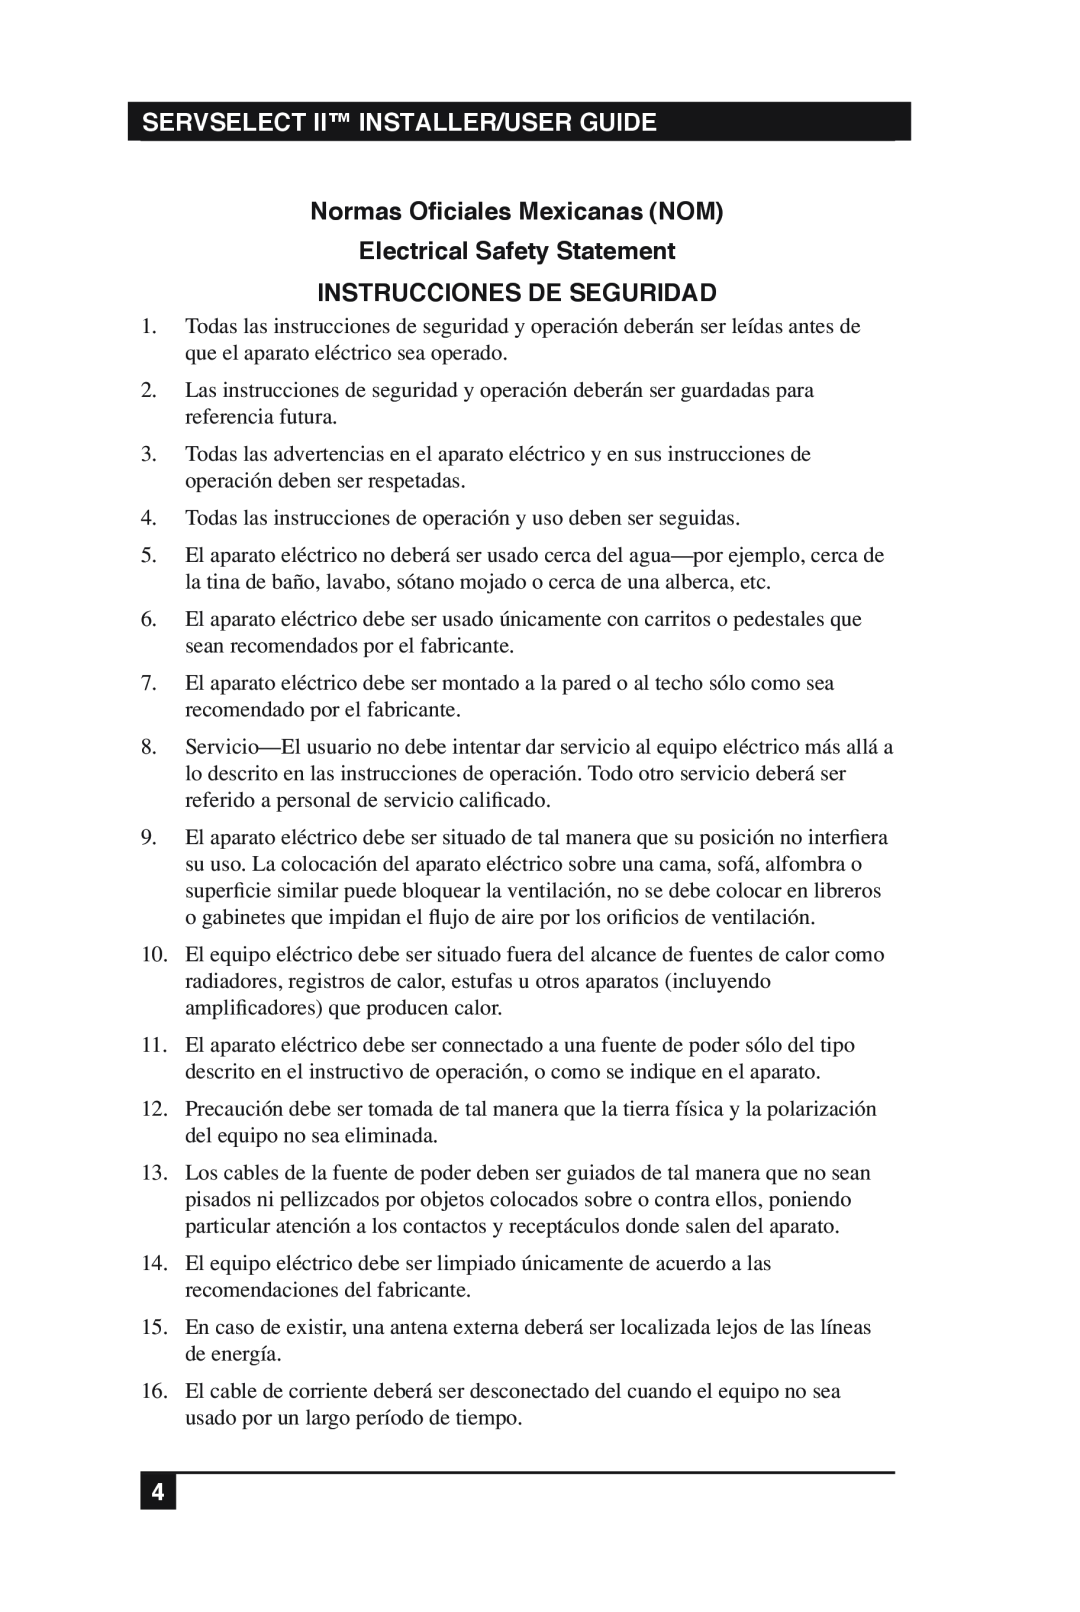 Black Box KV2016E, KV2016A manual Normas Oficiales Mexicanas NOM Electrical Safety Statement, Instrucciones De Seguridad 